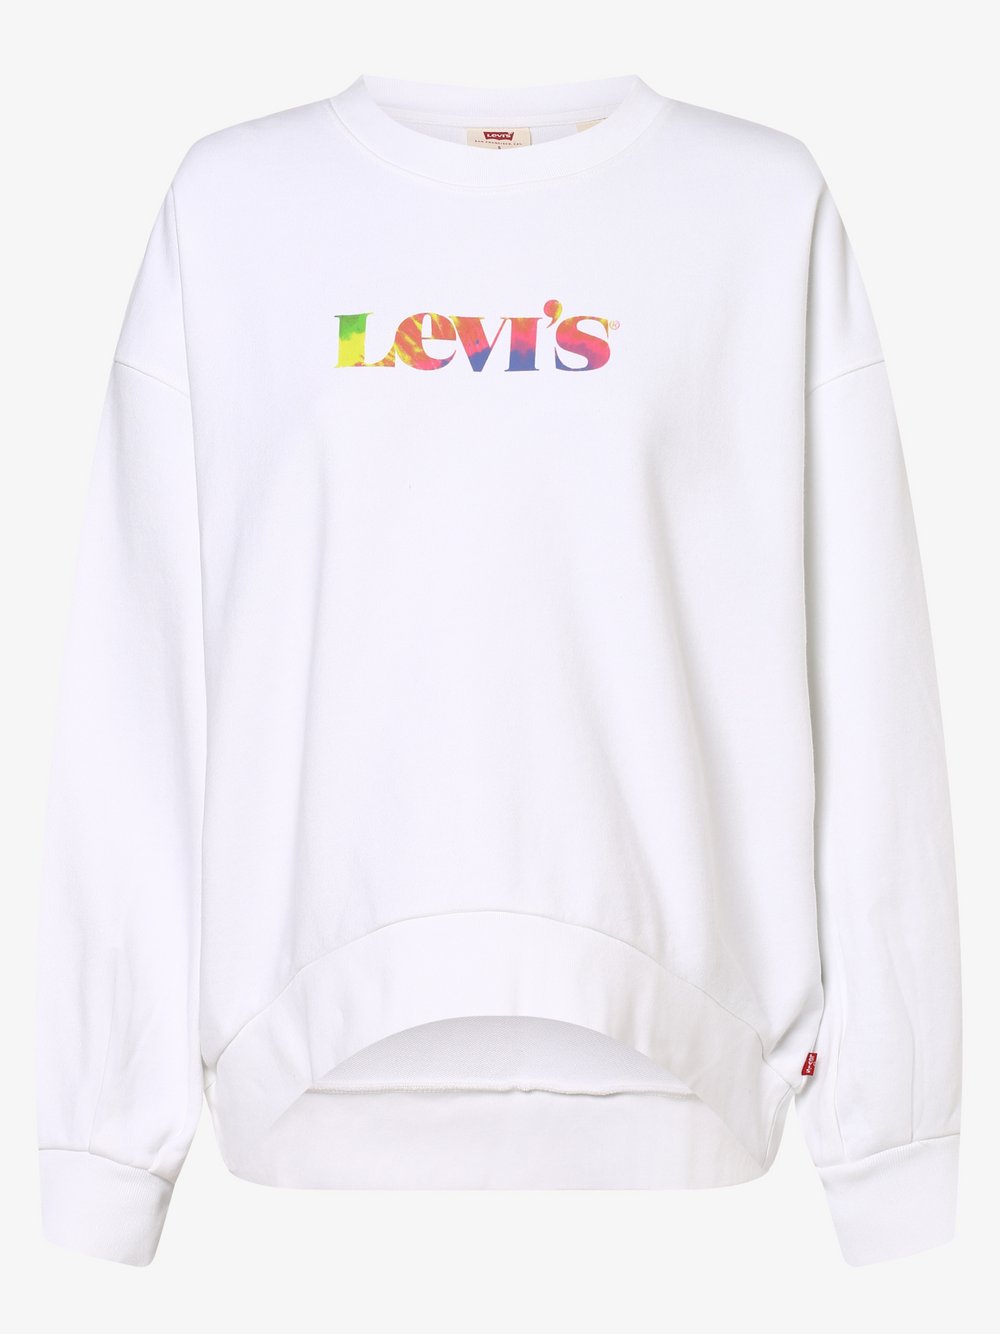 Levi's - Damska bluza nierozpinana, biały